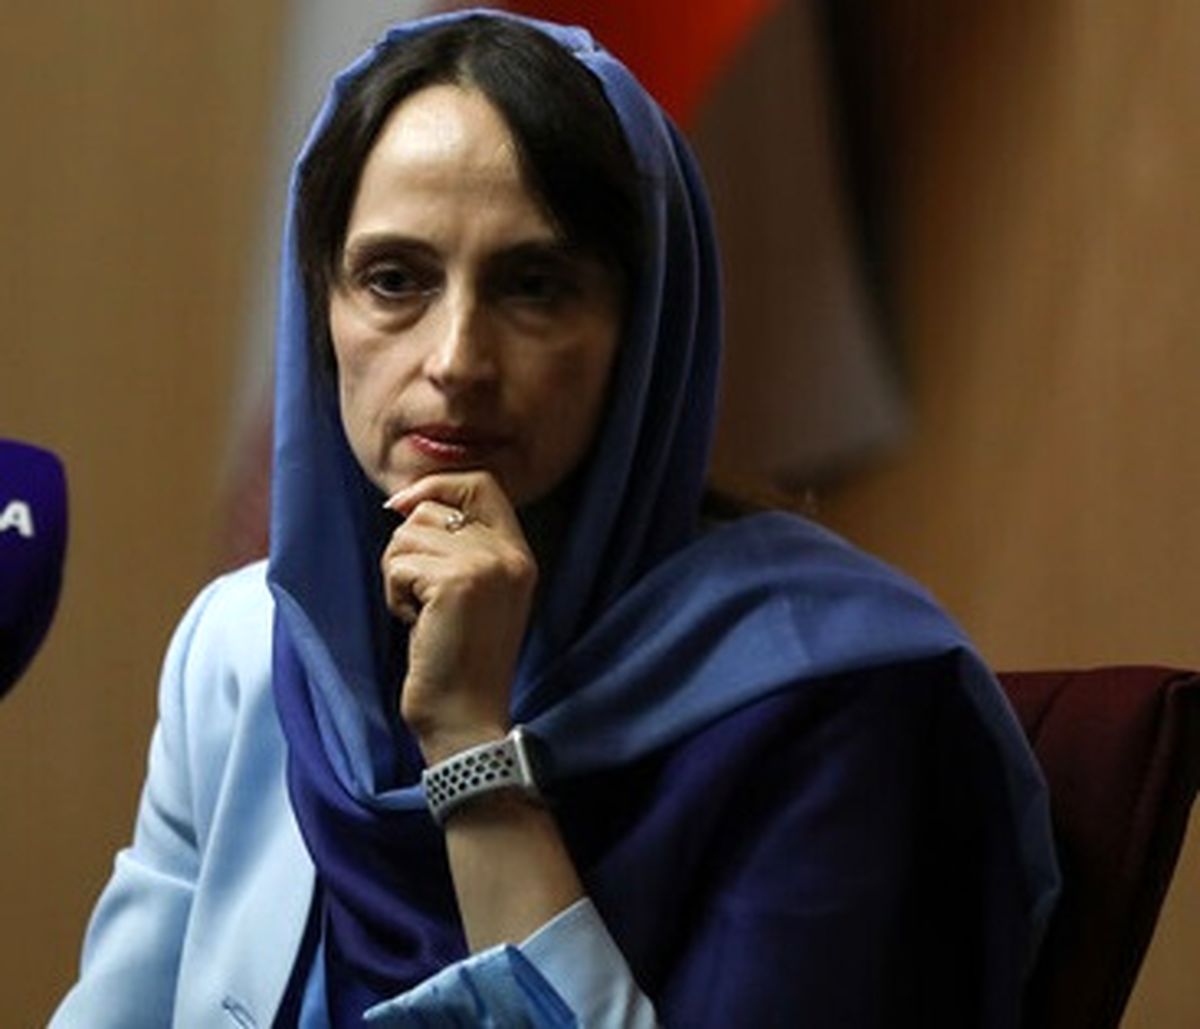 تاثیر تحریم بر شهروندان عادی ایران از دیدگاه گزارشگر ویژه سازمان ملل
